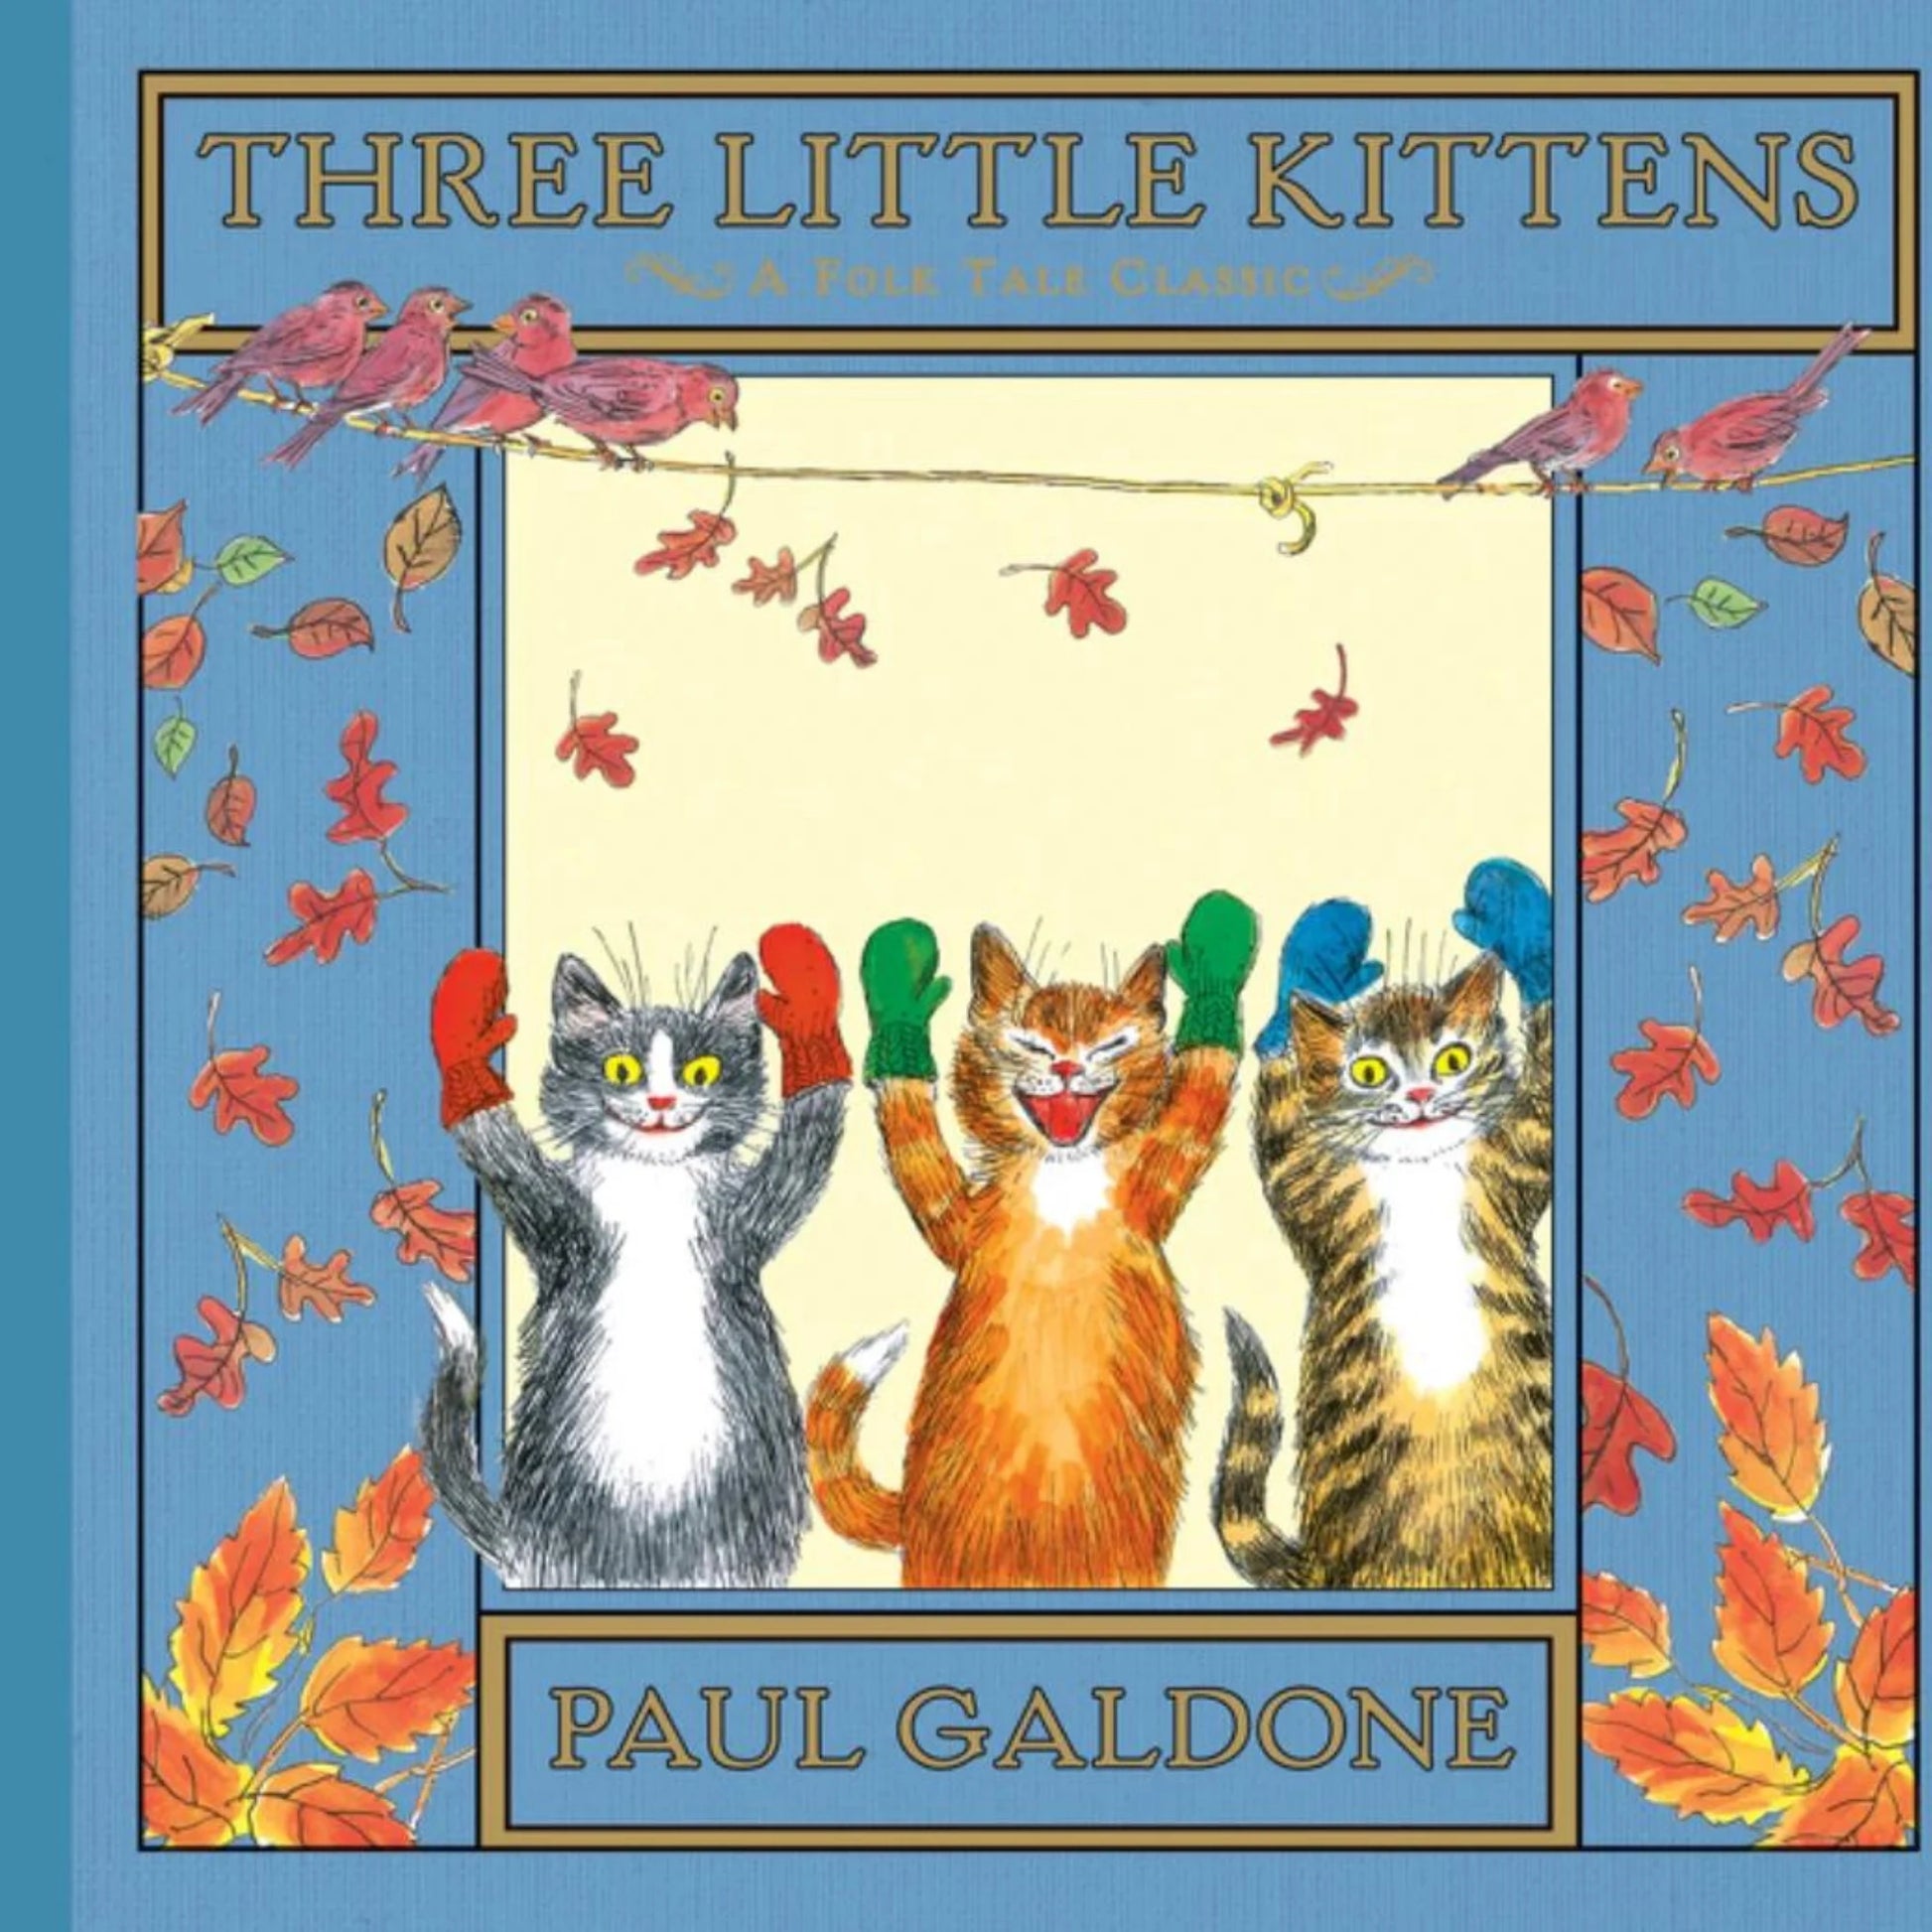 Three Little Kittens by Paul Galdone - Alder & Alouette